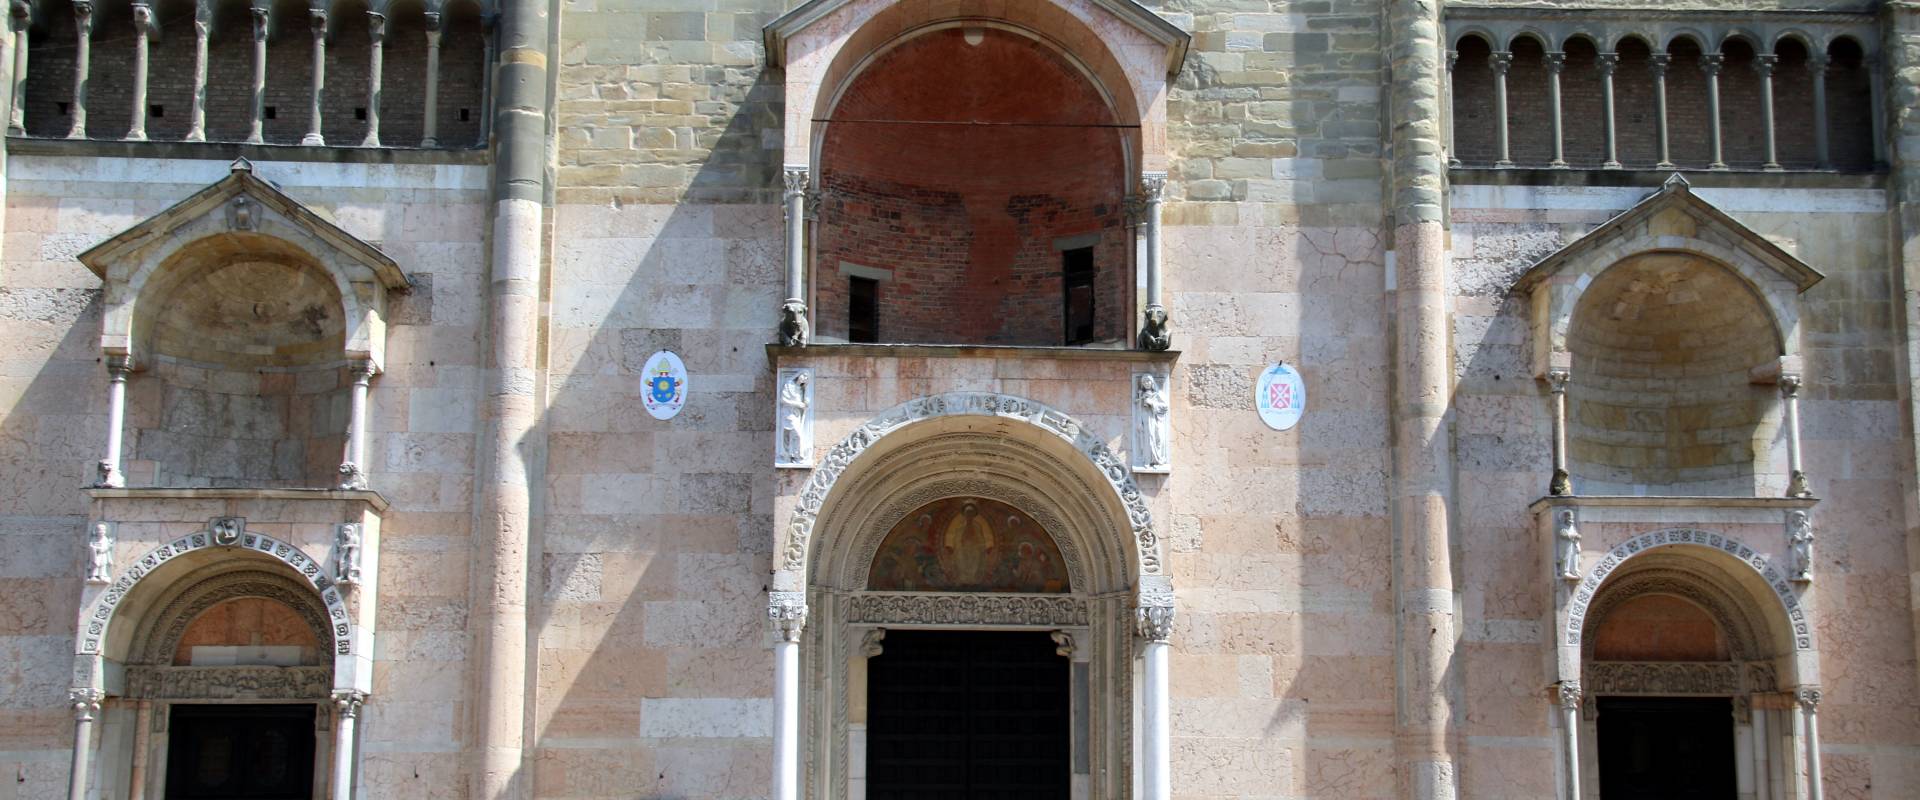 Duomo (Piacenza), facciata 05 foto di Mongolo1984